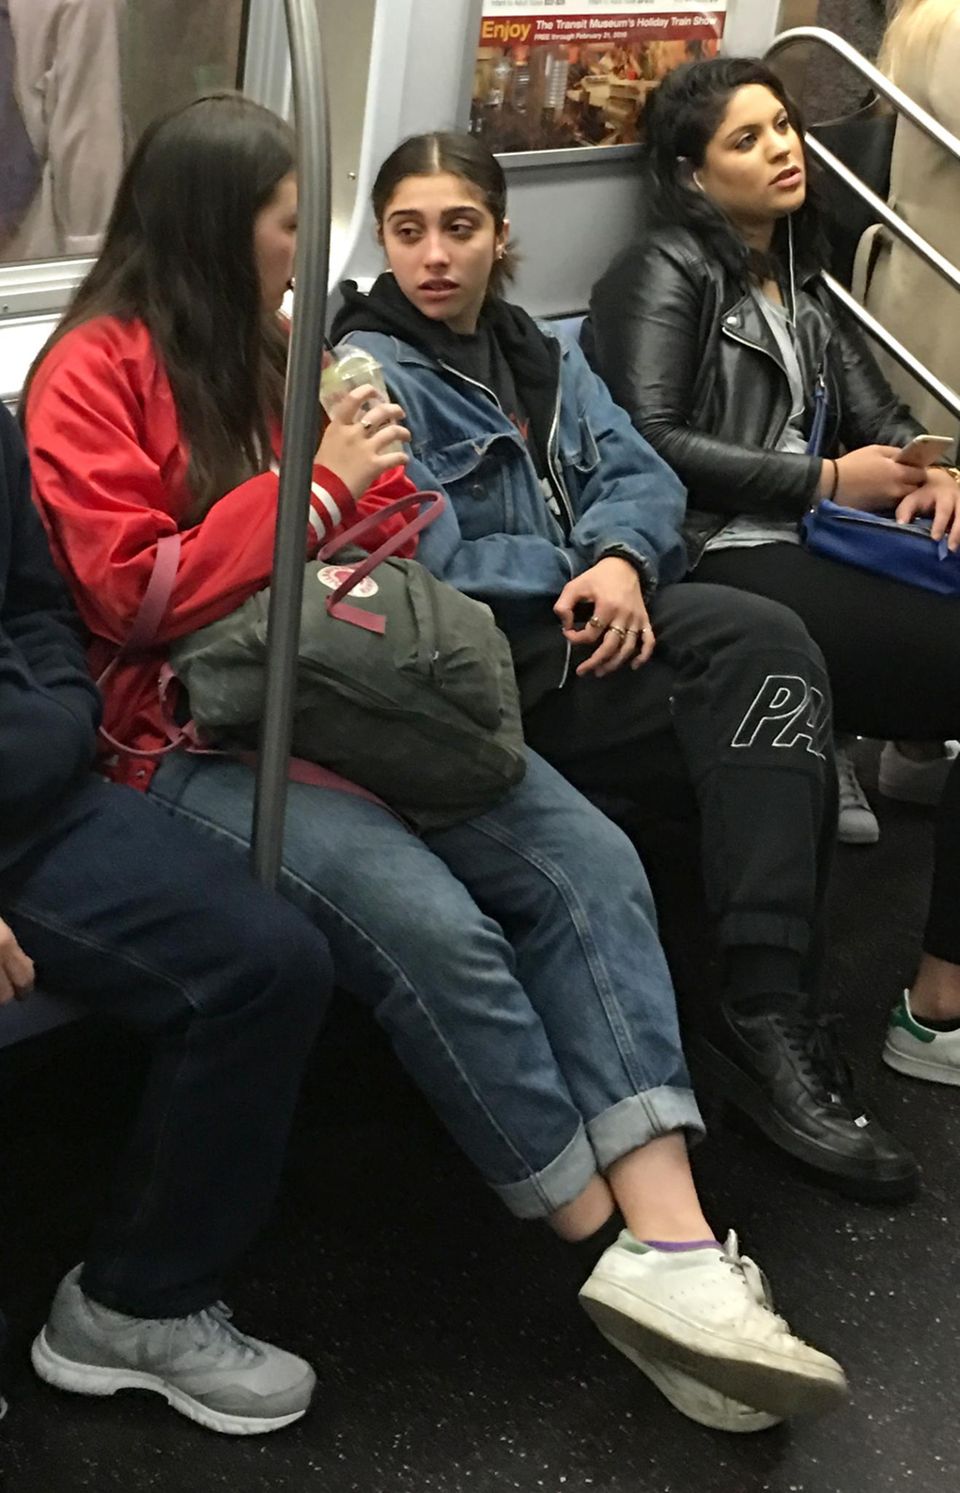 Madonnas Tochter Lourdes Leon steigt in Mnhattan in die U-Bahn und mischt sich unauffällig unter die Leute.